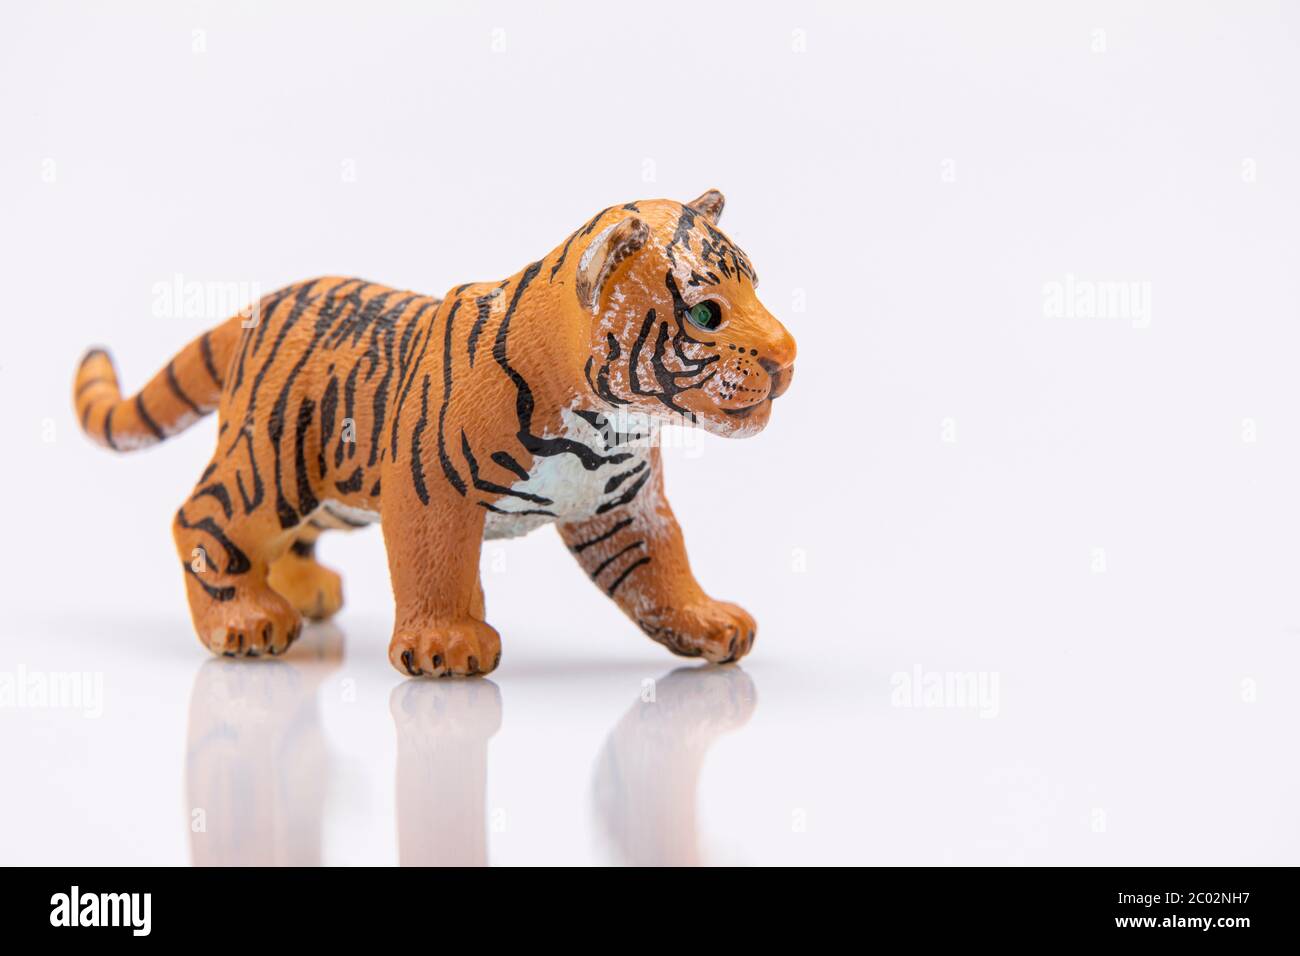 Giocoso bambino vestito in costume tigre,gioca a nascondino Foto